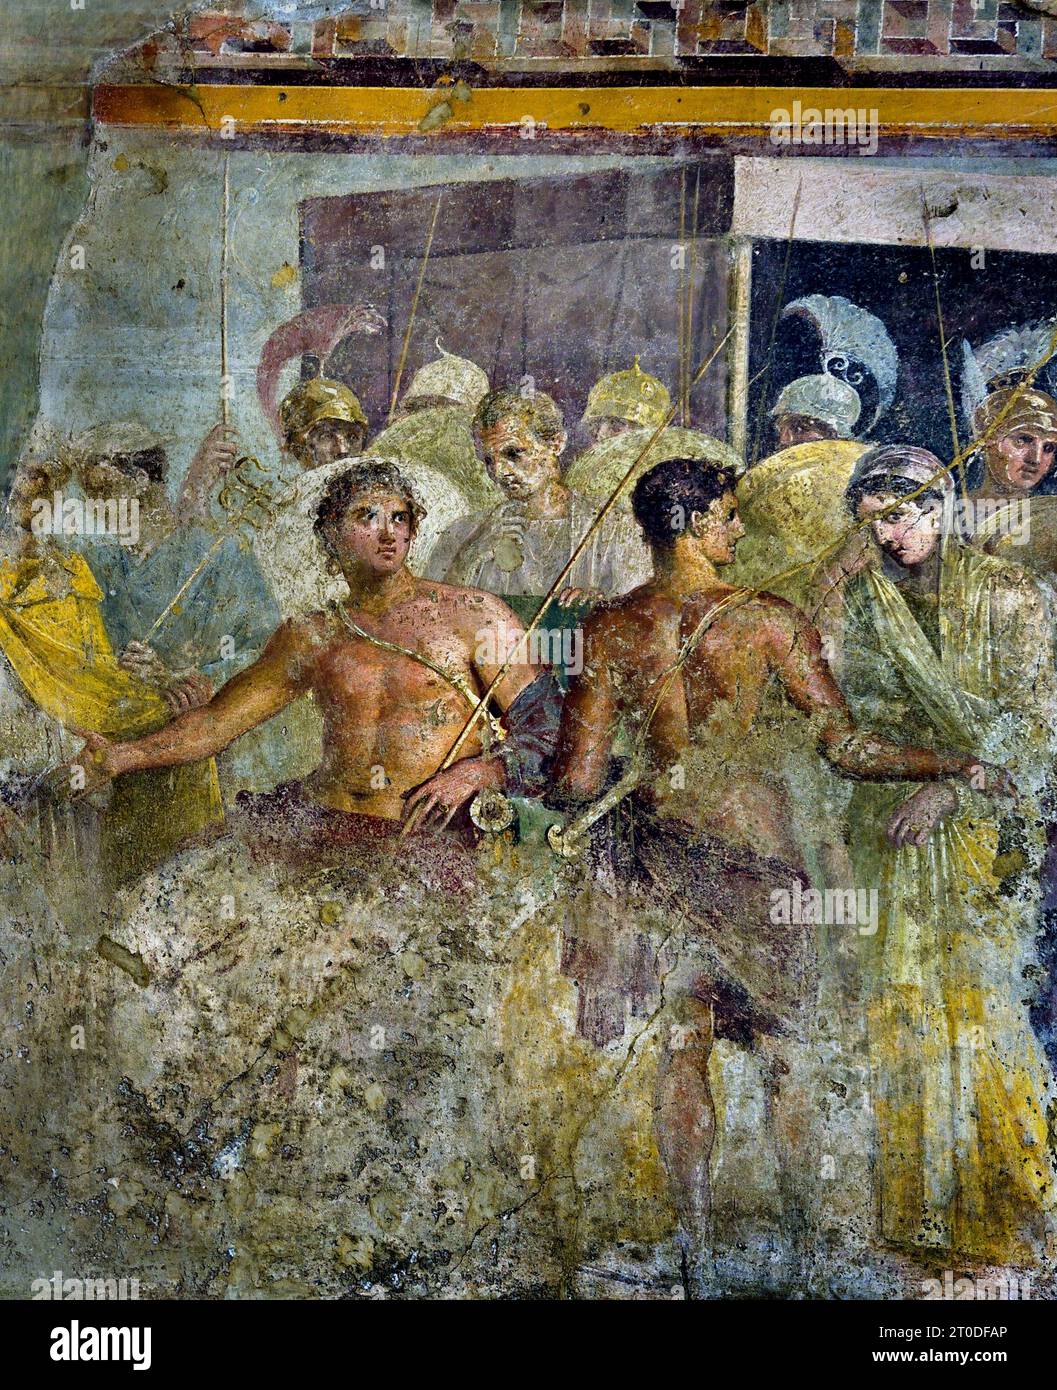 La resa di Achille di Briseis ad Agamennone (Troia) dalla Casa del tragico poeta fresco città romana di Pompei si trova vicino a Napoli, nella regione Campania d'Italia. Pompei fu sepolta sotto 4-6 m di cenere vulcanica e pomice nell'eruzione del Vesuvio nel 79 d.C. Italia Achille è costretto a rinunciare a Briseis, il prigioniero con cui si era innamorato, ad Agamennone, dopo che Agamennone dovette restituire Criseide a suo padre, Chryses, il sacerdote di Apollo. Casa del tragico poeta. Foto Stock